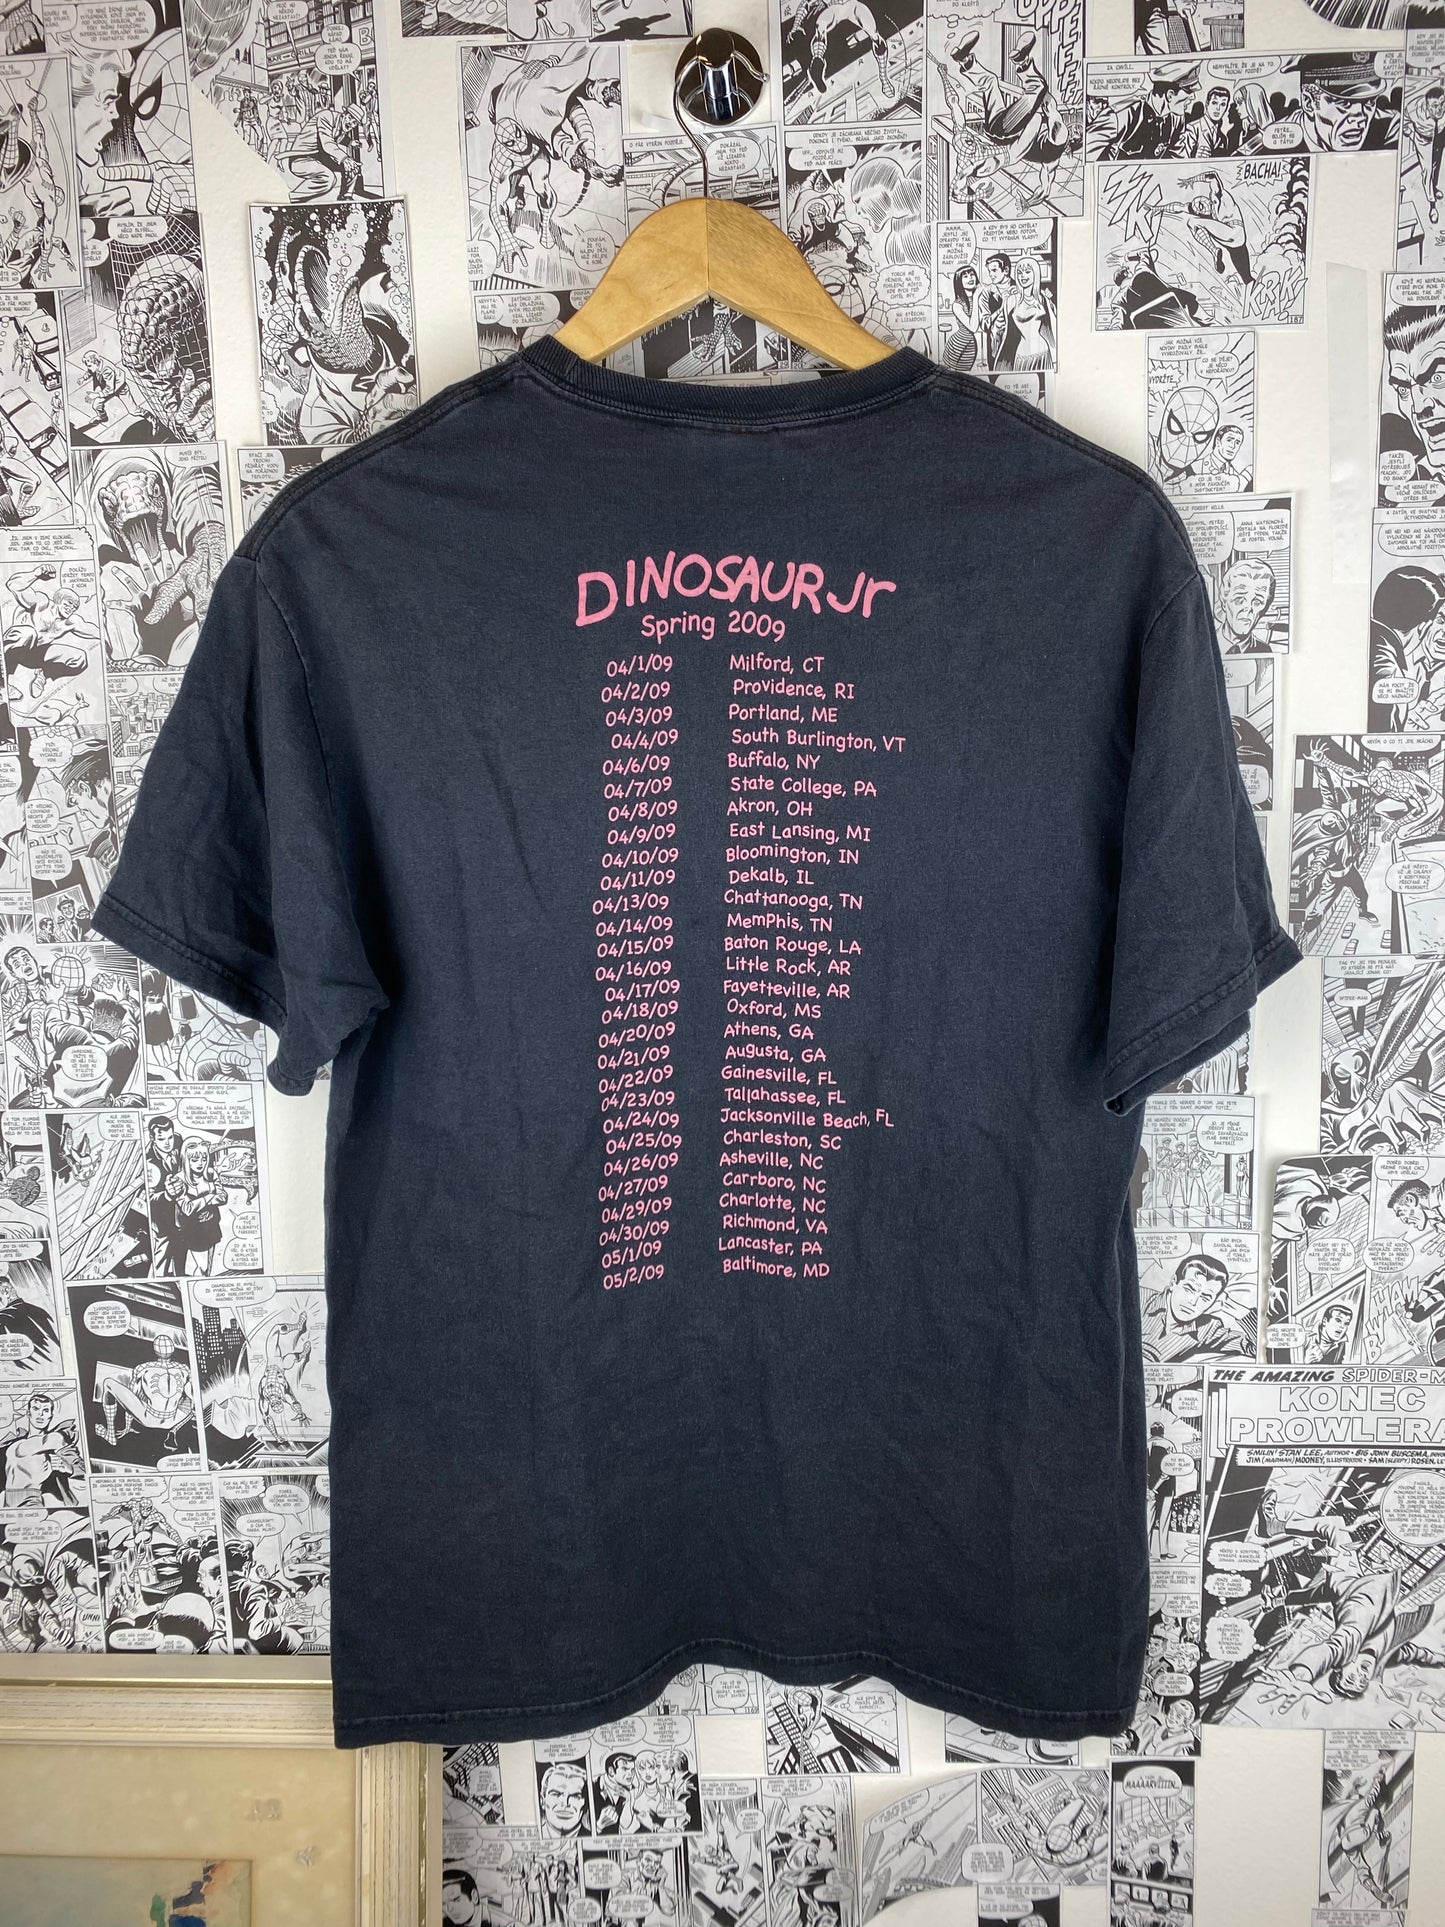 Vintage Dinosaur Jr. 2009 tour t-shirt - size M